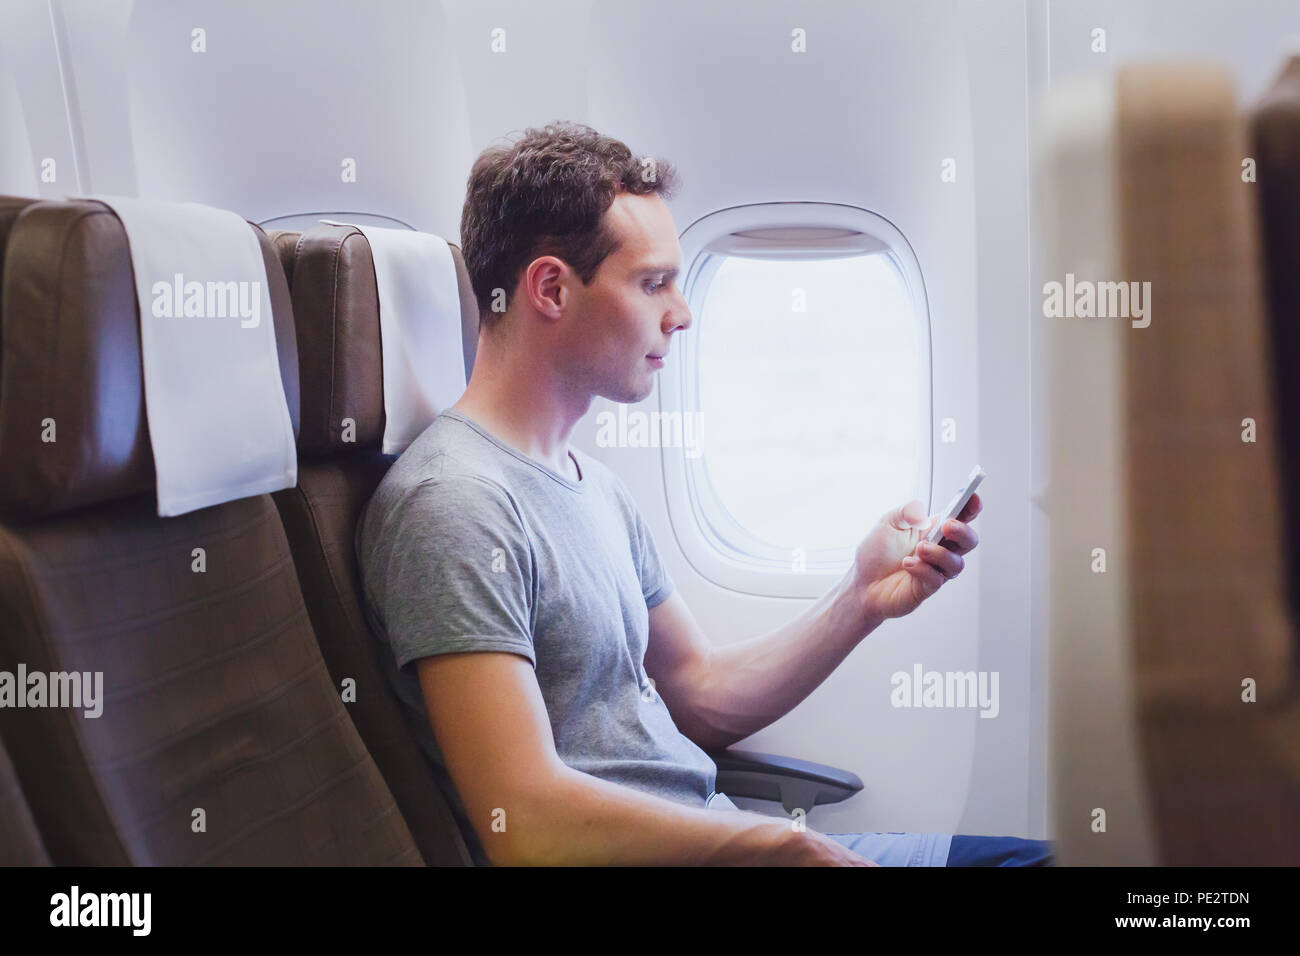 Pasajero de avión utilizando el teléfono inteligente móvil en el avión, viajes app en smartphone Foto de stock